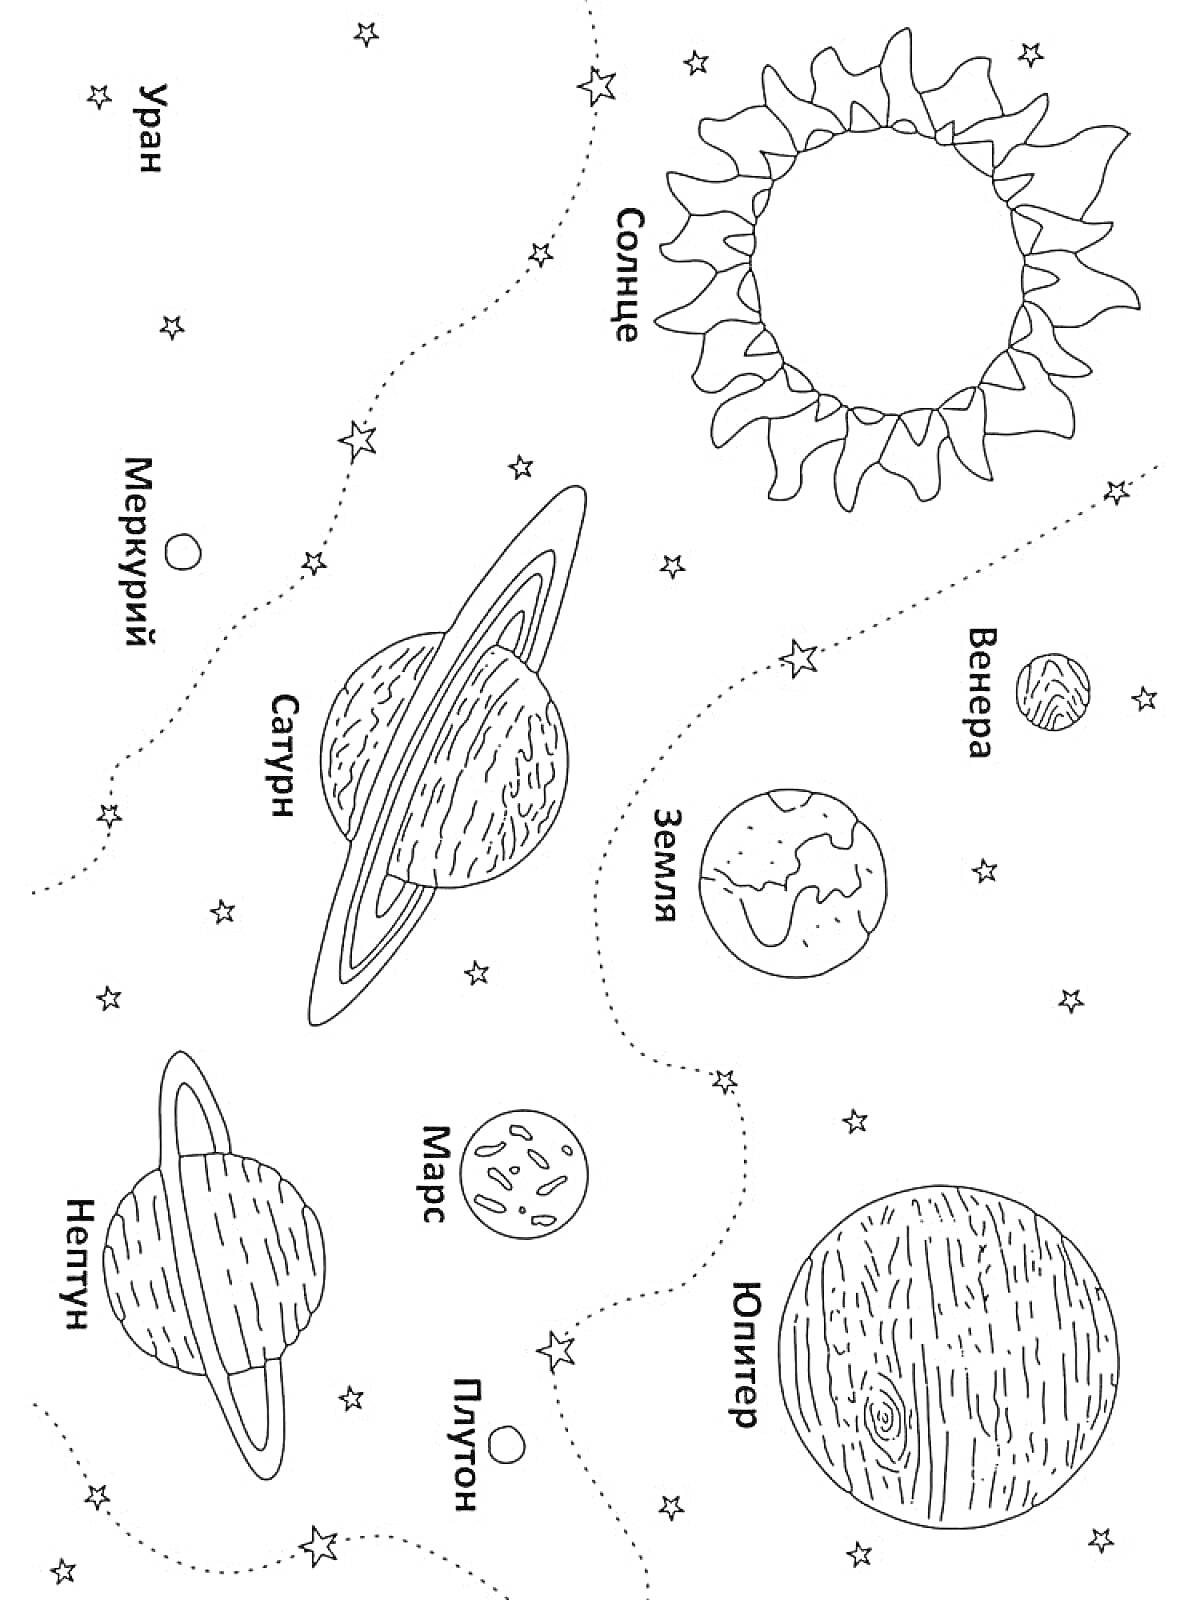 Раскраска Планеты Солнечной системы с подписями: Солнце, Меркурий, Венера, Земля, Марс, Юпитер, Сатурн, Уран, Нептун, Плутон. Изображены планеты, звезды, орбиты.